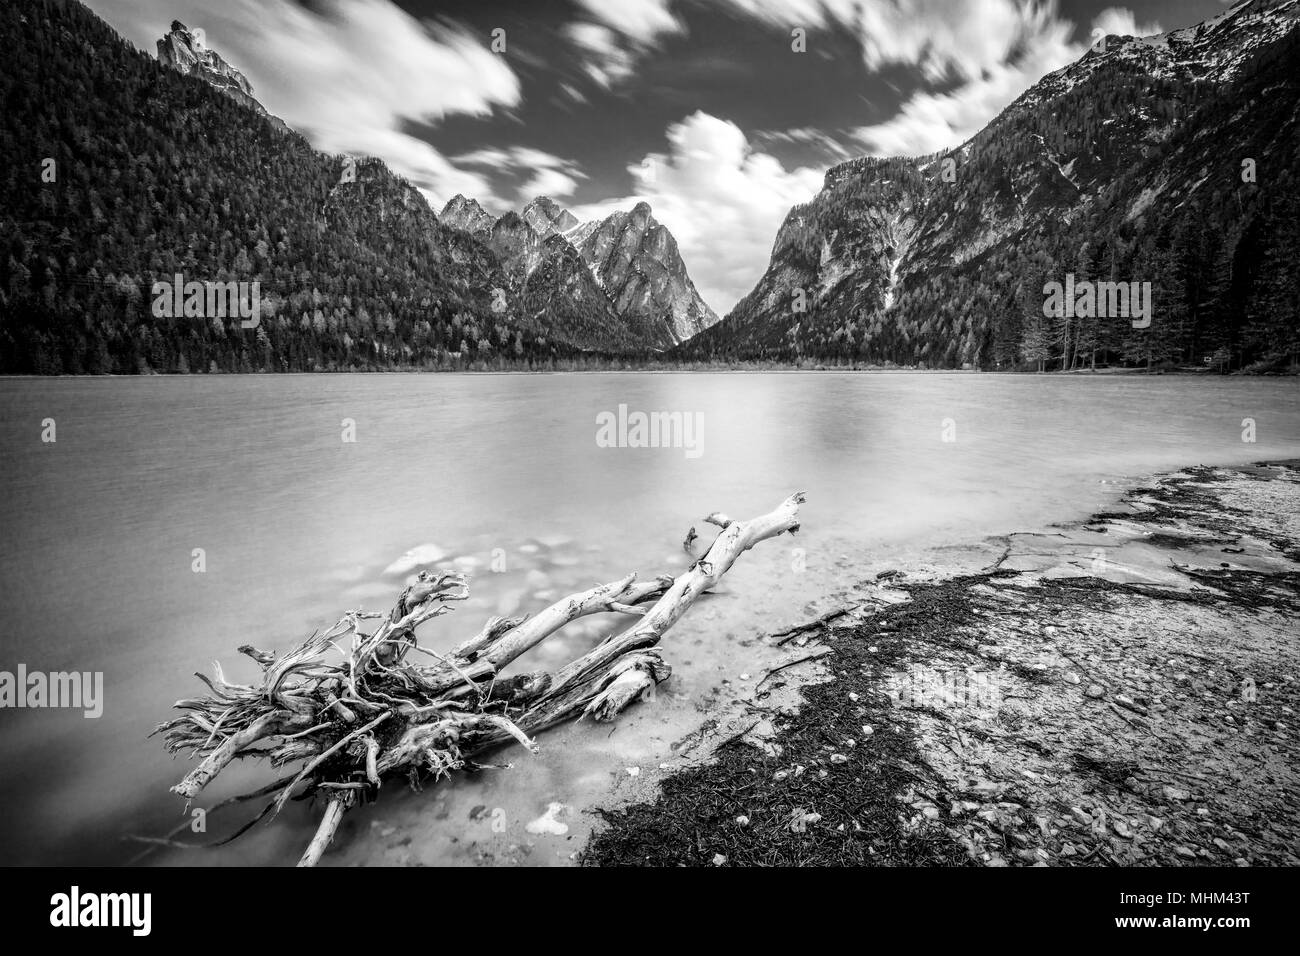 Dettaglio del lago di Dobbiaco sulle alpi italiane Foto Stock